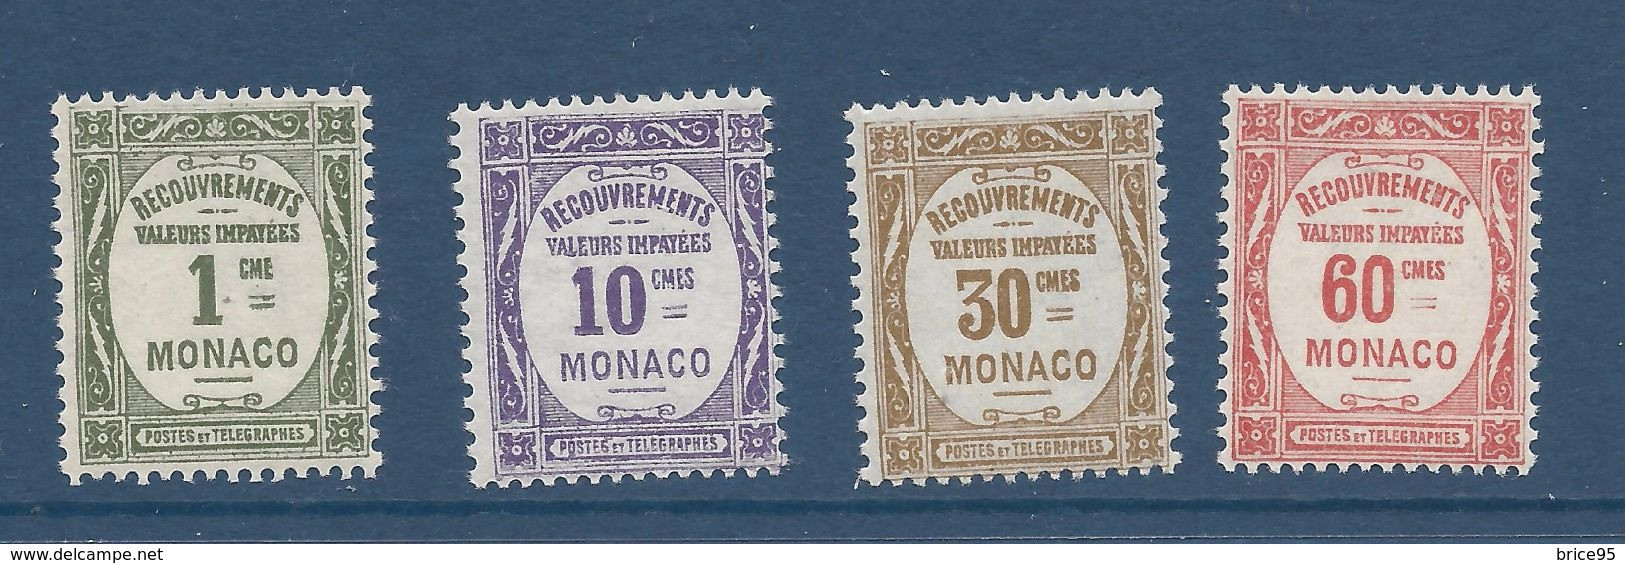 Monaco - Taxe - YT N° 13 à 16 * - Neuf Avec Charnière - 1924 à 1932 - Unused Stamps